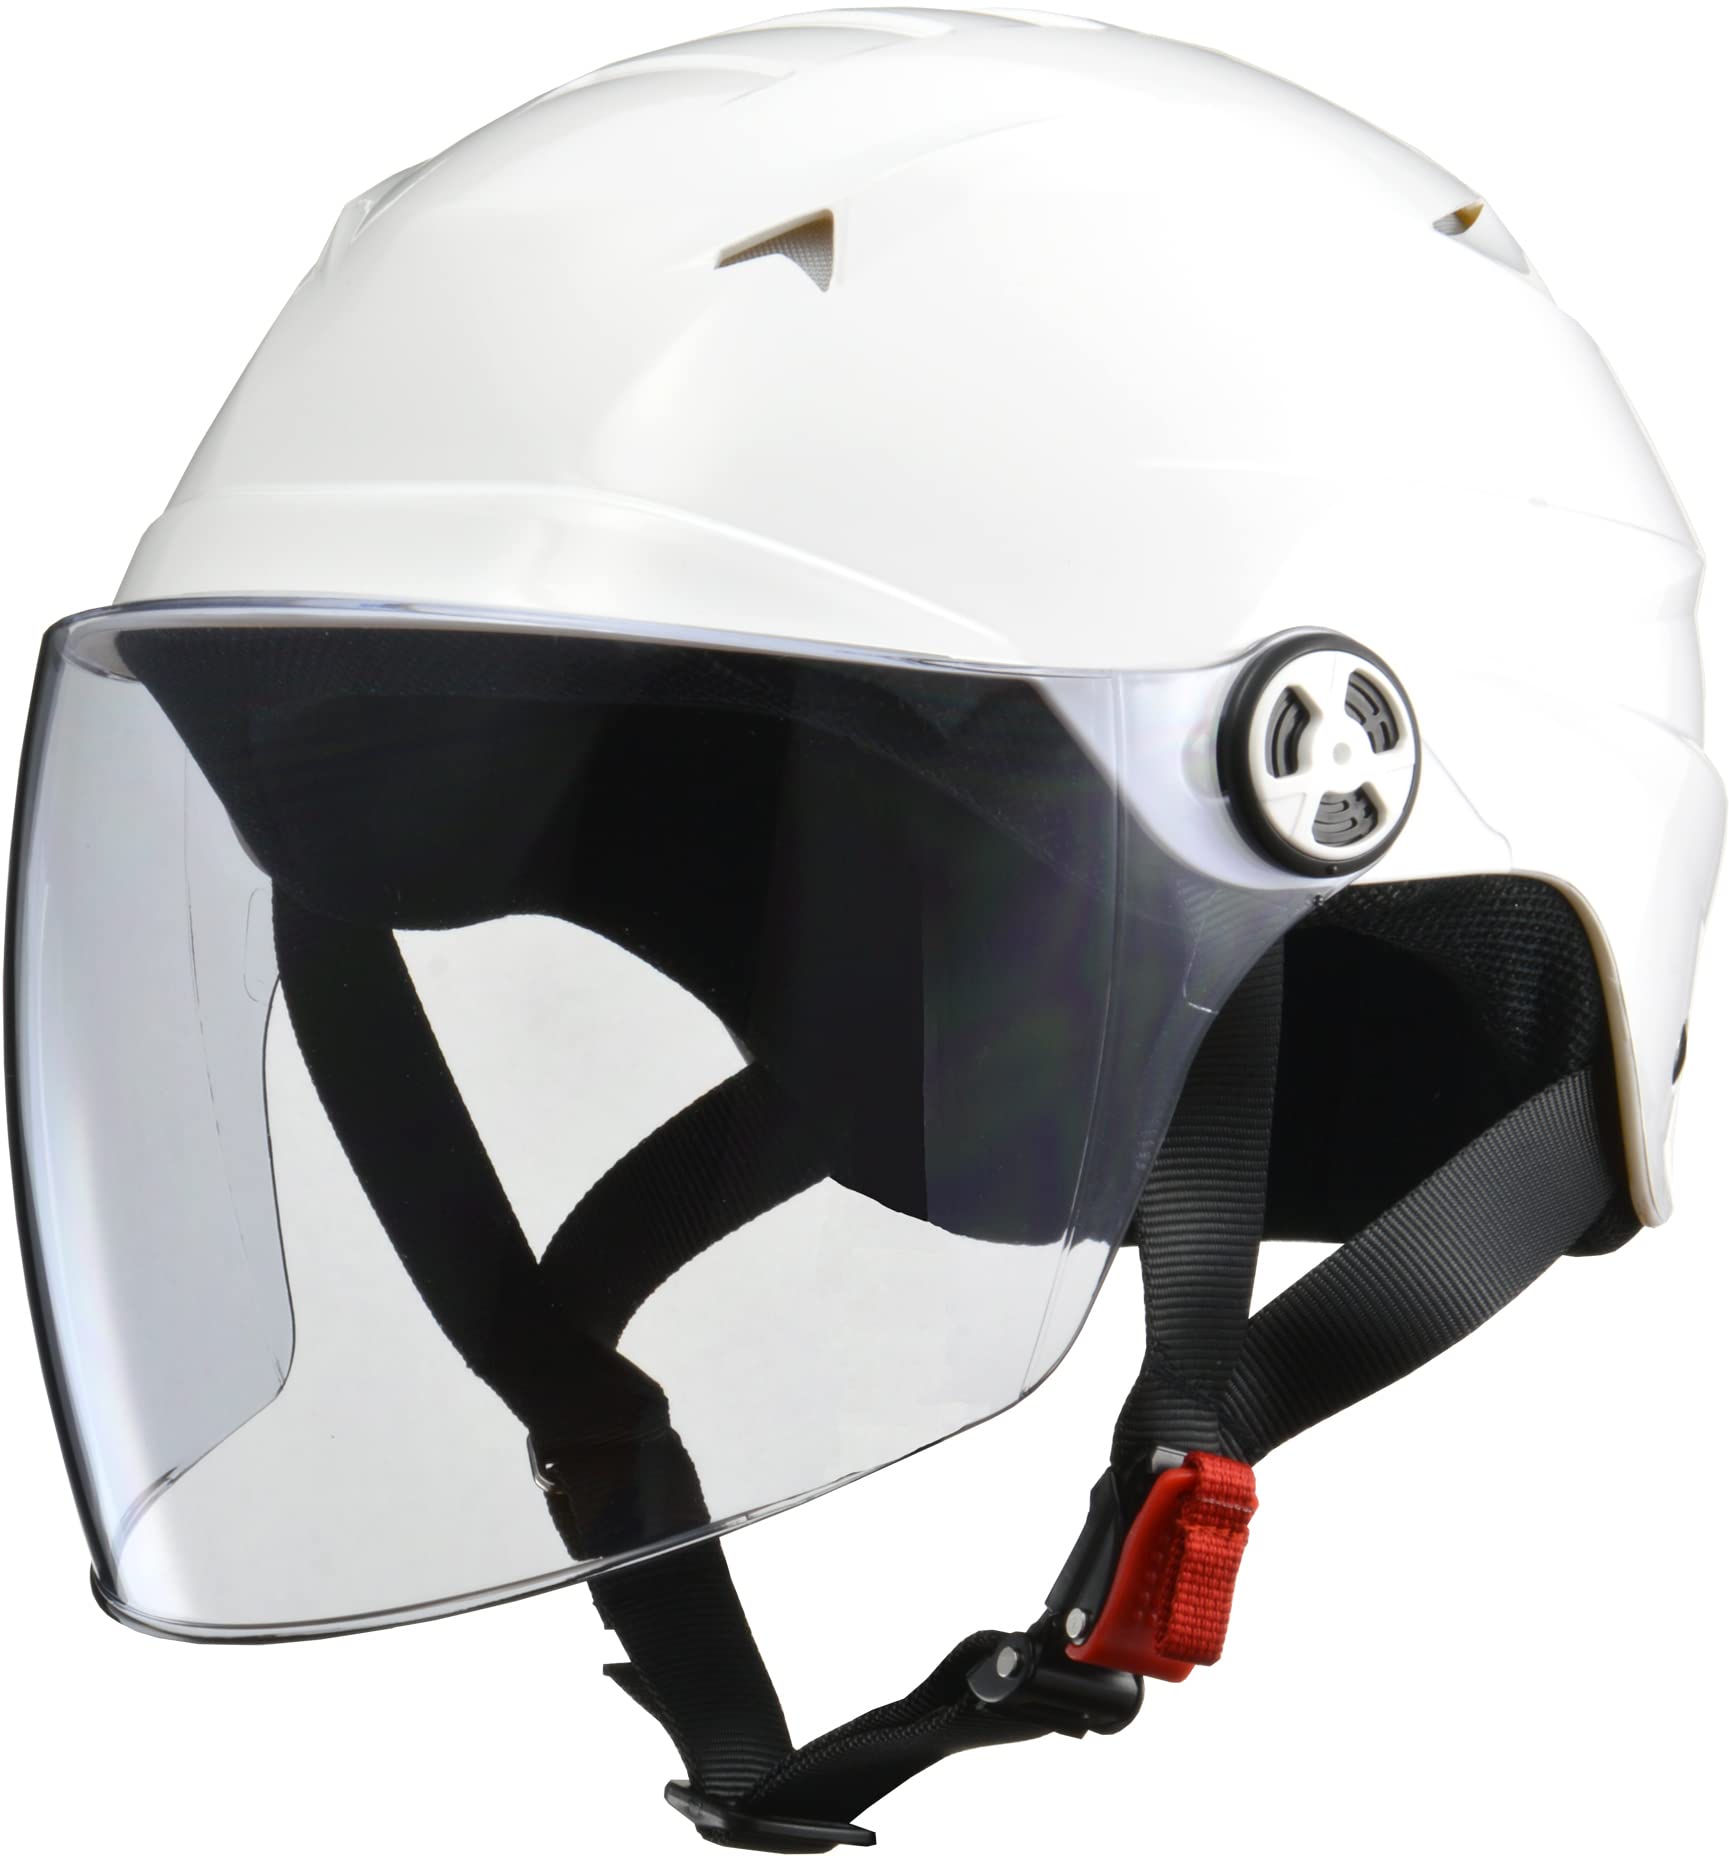 商品情報商品の説明説明 商品紹介 SERIO RE-40 開閉シールド付きハーフヘルメット 軽量でスタイリッシュな開閉式シールド付きハーフヘルメット 個性的でスタイリッシュな帽体形状が特徴的な開閉式シールド付きハーフヘルメット。 前頭部にエアベンチレーションを装備し、走行風をヘルメット内部へ取り込み、こもりやすい熱やムレを解消。締め付け調整が可能なラチェット式バックルを採用。 ・開閉式シールド ライトスモークシールドを標準装備。ハードコート、UVカット仕様。 ・内装 内装の天井部分にメッシュを使用しており蒸れを低減。 ・エアベンチレーション 前頭部にエアベンチレーションを装備し、走行風をヘルメット内部へ取り込み、こもりやすい熱やムレを後方エアダクトで排出 ------------------ 商品名：SERIO RE-40 開閉シールド付きハーフヘルメット カラー：スモーキーシルバー・マットブラック・ホワイト・ブラック サイズ：フリー(57~60cm未満) 規　格：PSC、SG（125cc以下用） 重　量：約750g 素　材：帽体=ABS 標準シールドカラー：ライトスモーク 付属品：サイズ調整スポンジ 使用上の注意 ●画像はイメージです。また、製品仕様は改良により予告なく変更される場合があります。予めご了承ください。 ご注意（免責）＞必ずお読みください ※常に新作・後継品の発送をいたしております。 メーカーにより、予告なく仕様が変更になることがございます。 ※輸送中に細かな傷や汚れがつくことがございます。 ※イメージ違い、サイズ違い等、お客様都合での返品は対応できません。 ご購入前に必ずご確認をお願い致します。 ※サイズを確認してご購入してください。 ※取り扱い説明書をお読みの上ご使用ください。 ※ご使用後や加工後はいかなる苦情もお受け出来ません。主な仕様 サイズ:フリー(頭囲57~60cm未満)br規格:PSC・SG(125cc以下用)br着脱、調整が容易なラチェット式バックルを採用brハードコート、UVカット仕様のライトスモークシールドbr前頭部にエアベンチレーションを装備br外寸:約W235×D315×H220mm